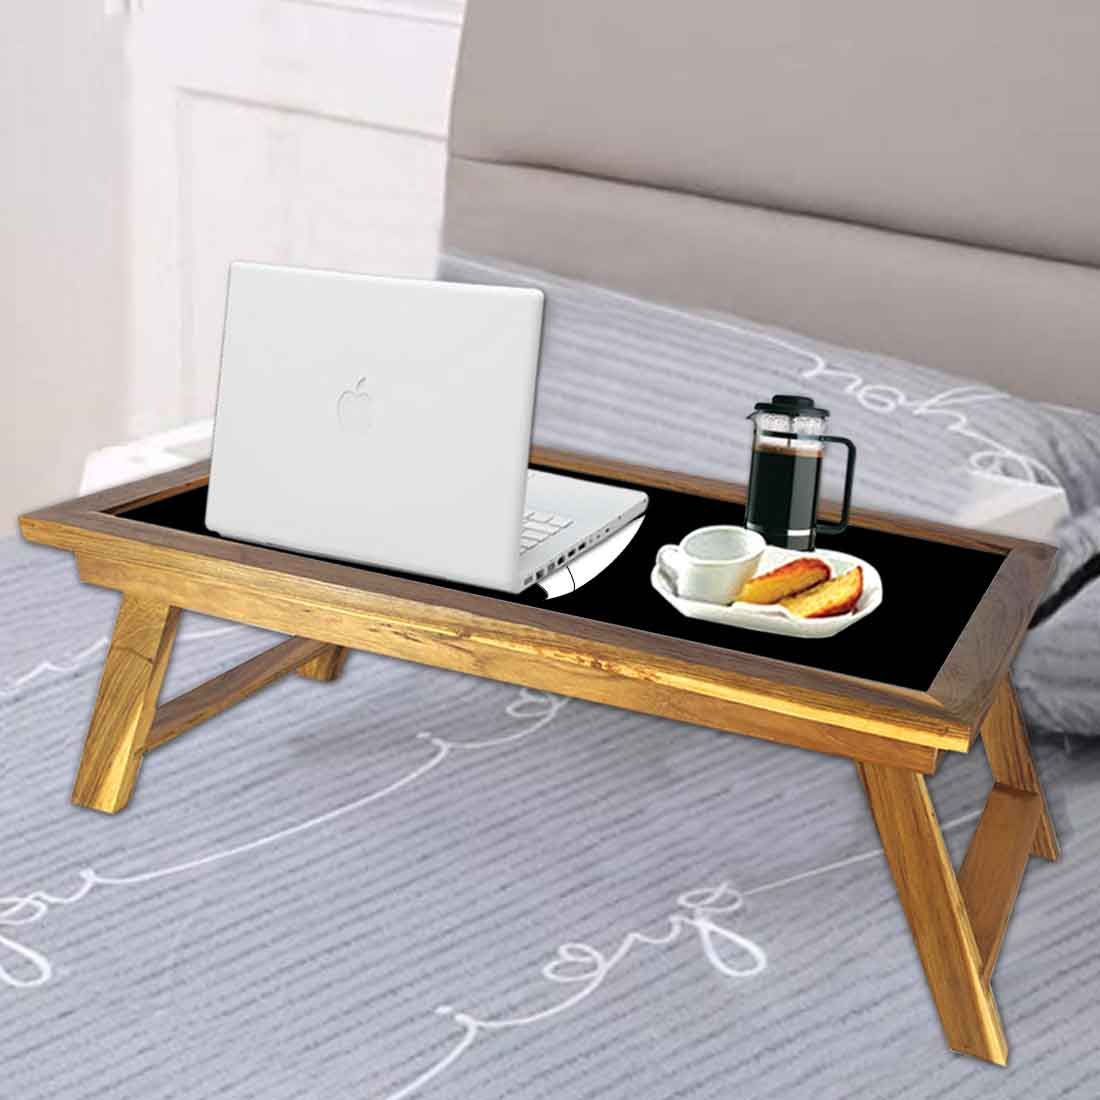 Nutcase Designer Lapdesk Breakfast Bed Table-Foldable Teak Wooden Study Desk - Suit Up Nutcase